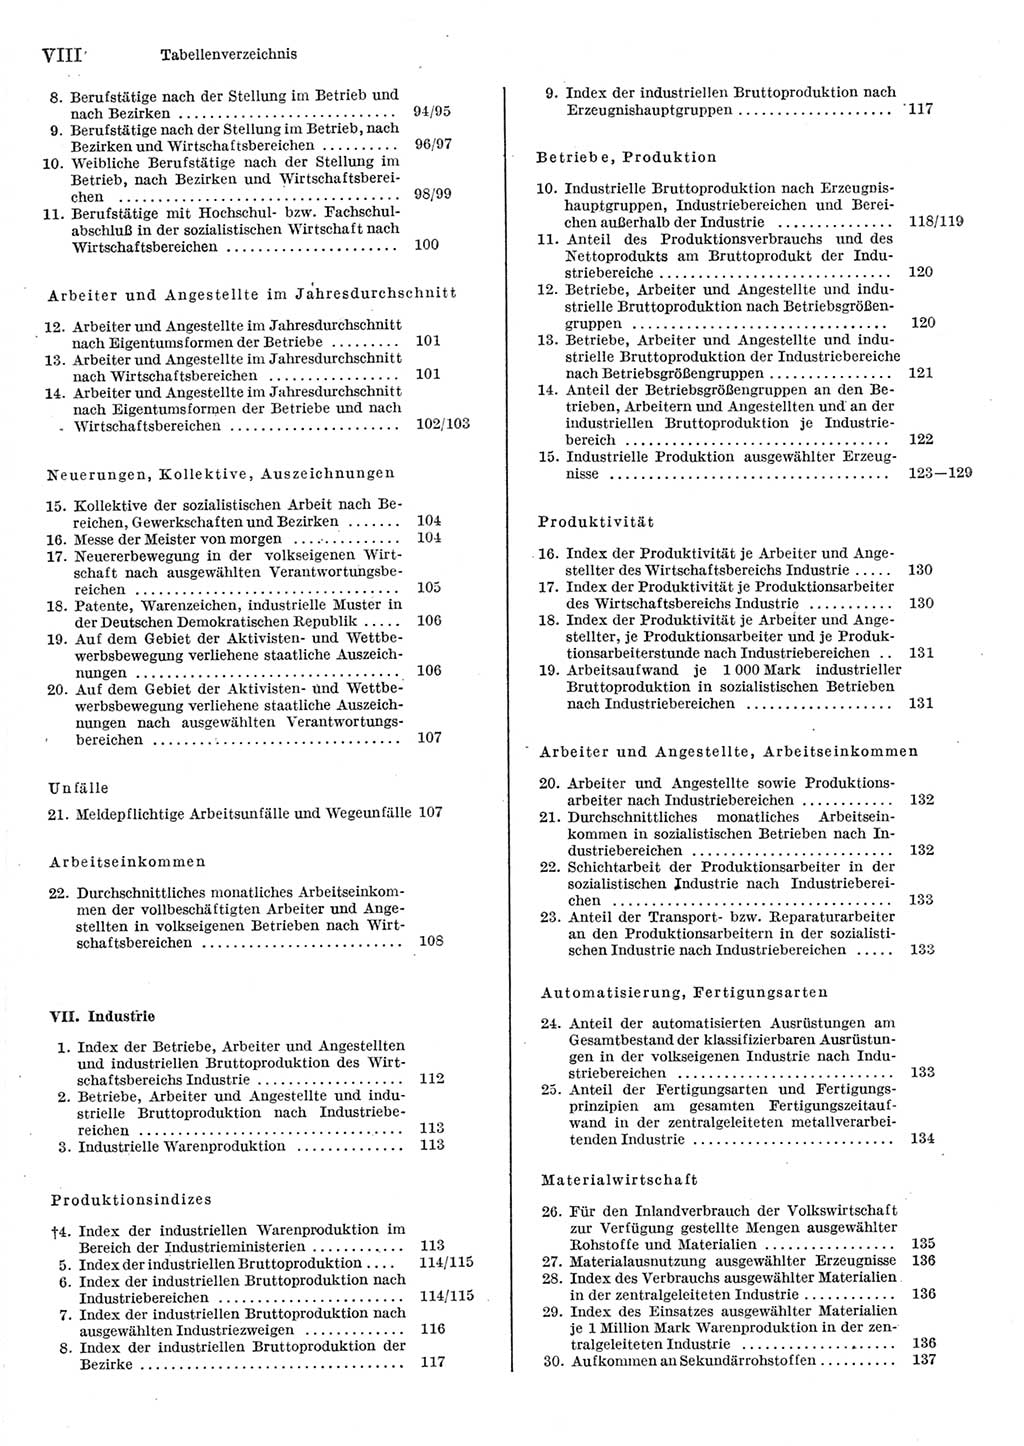 Statistisches Jahrbuch der Deutschen Demokratischen Republik (DDR) 1977, Seite 8 (Stat. Jb. DDR 1977, S. 8)